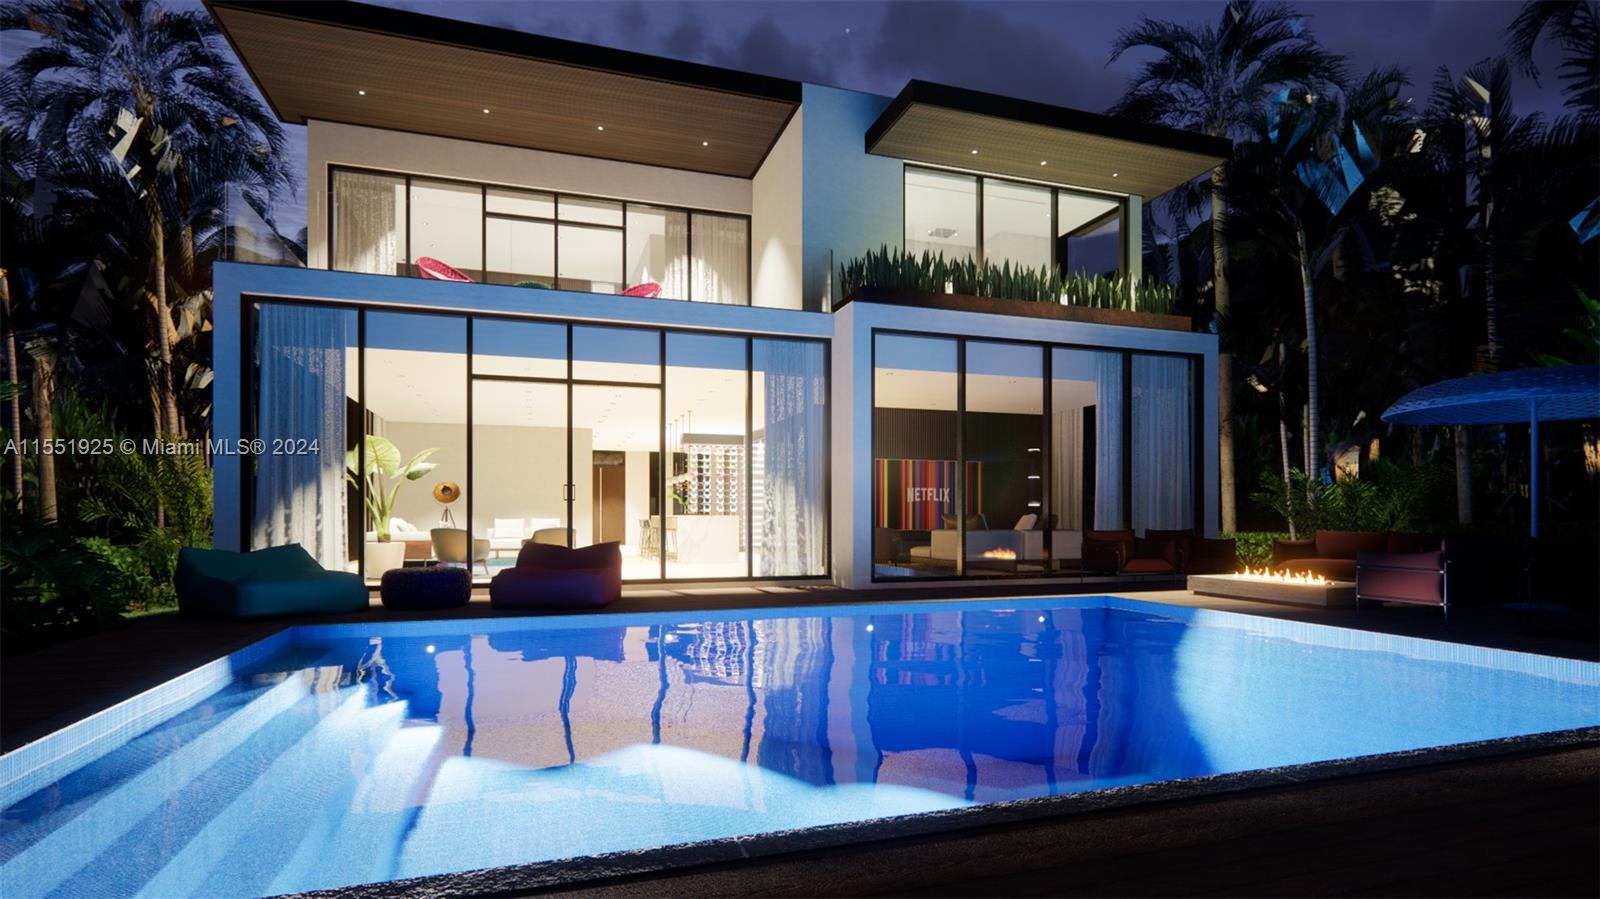 Property for Sale at 6020 Alton, Miami Beach, Miami-Dade County, Florida - Bedrooms: 4 
Bathrooms: 4  - $1,599,000